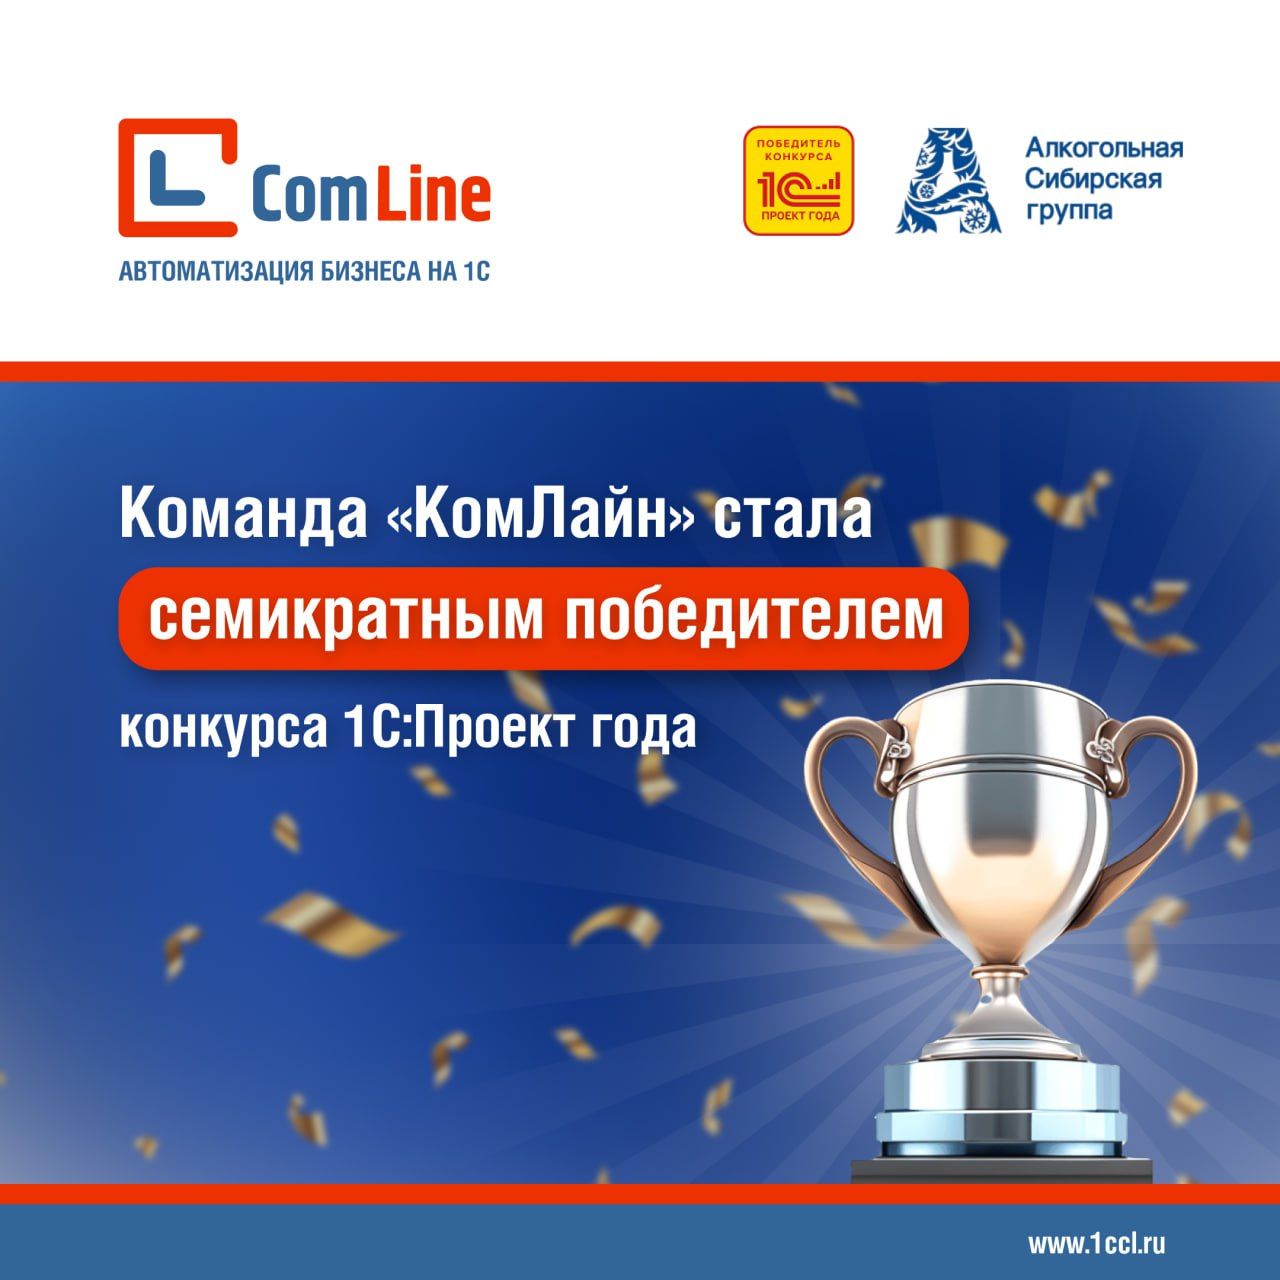 ГК «КомЛайн» стала семикратным победителем конкурса 1С:Проект года